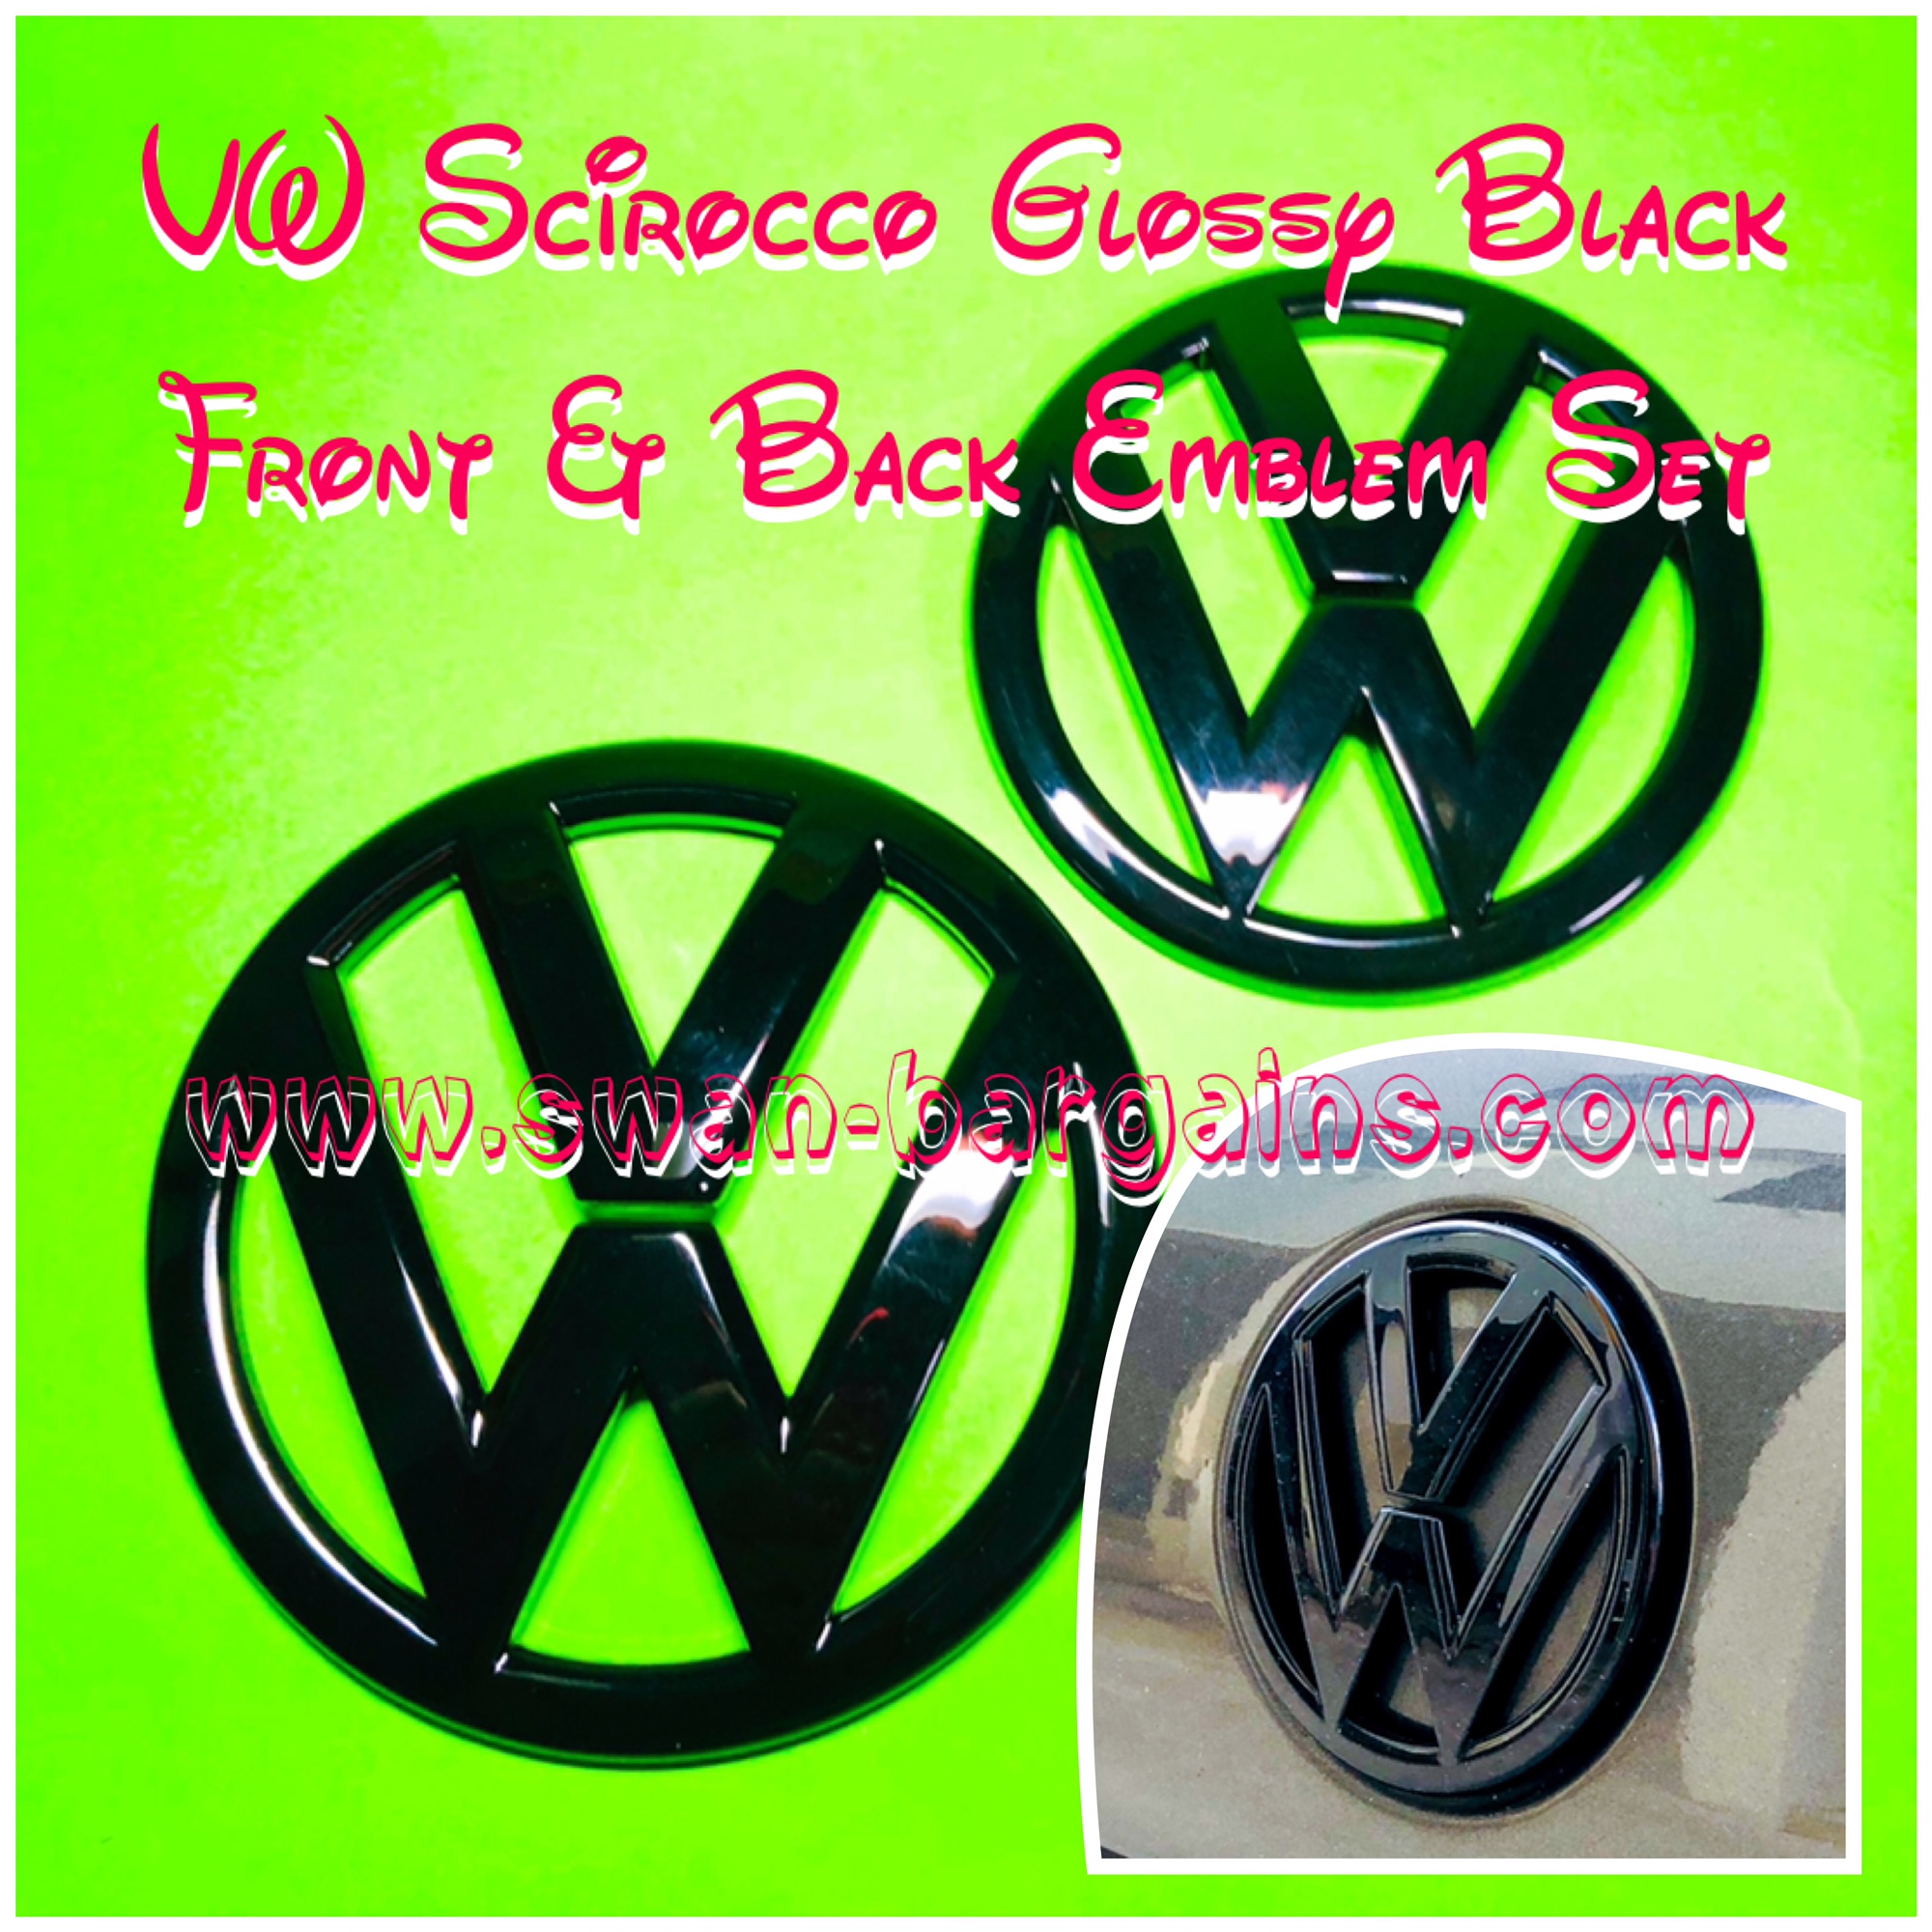 VW Scirocco Front Bonnet Rear Trunk Emblem Singapore 2Pcs Glossy Black Front